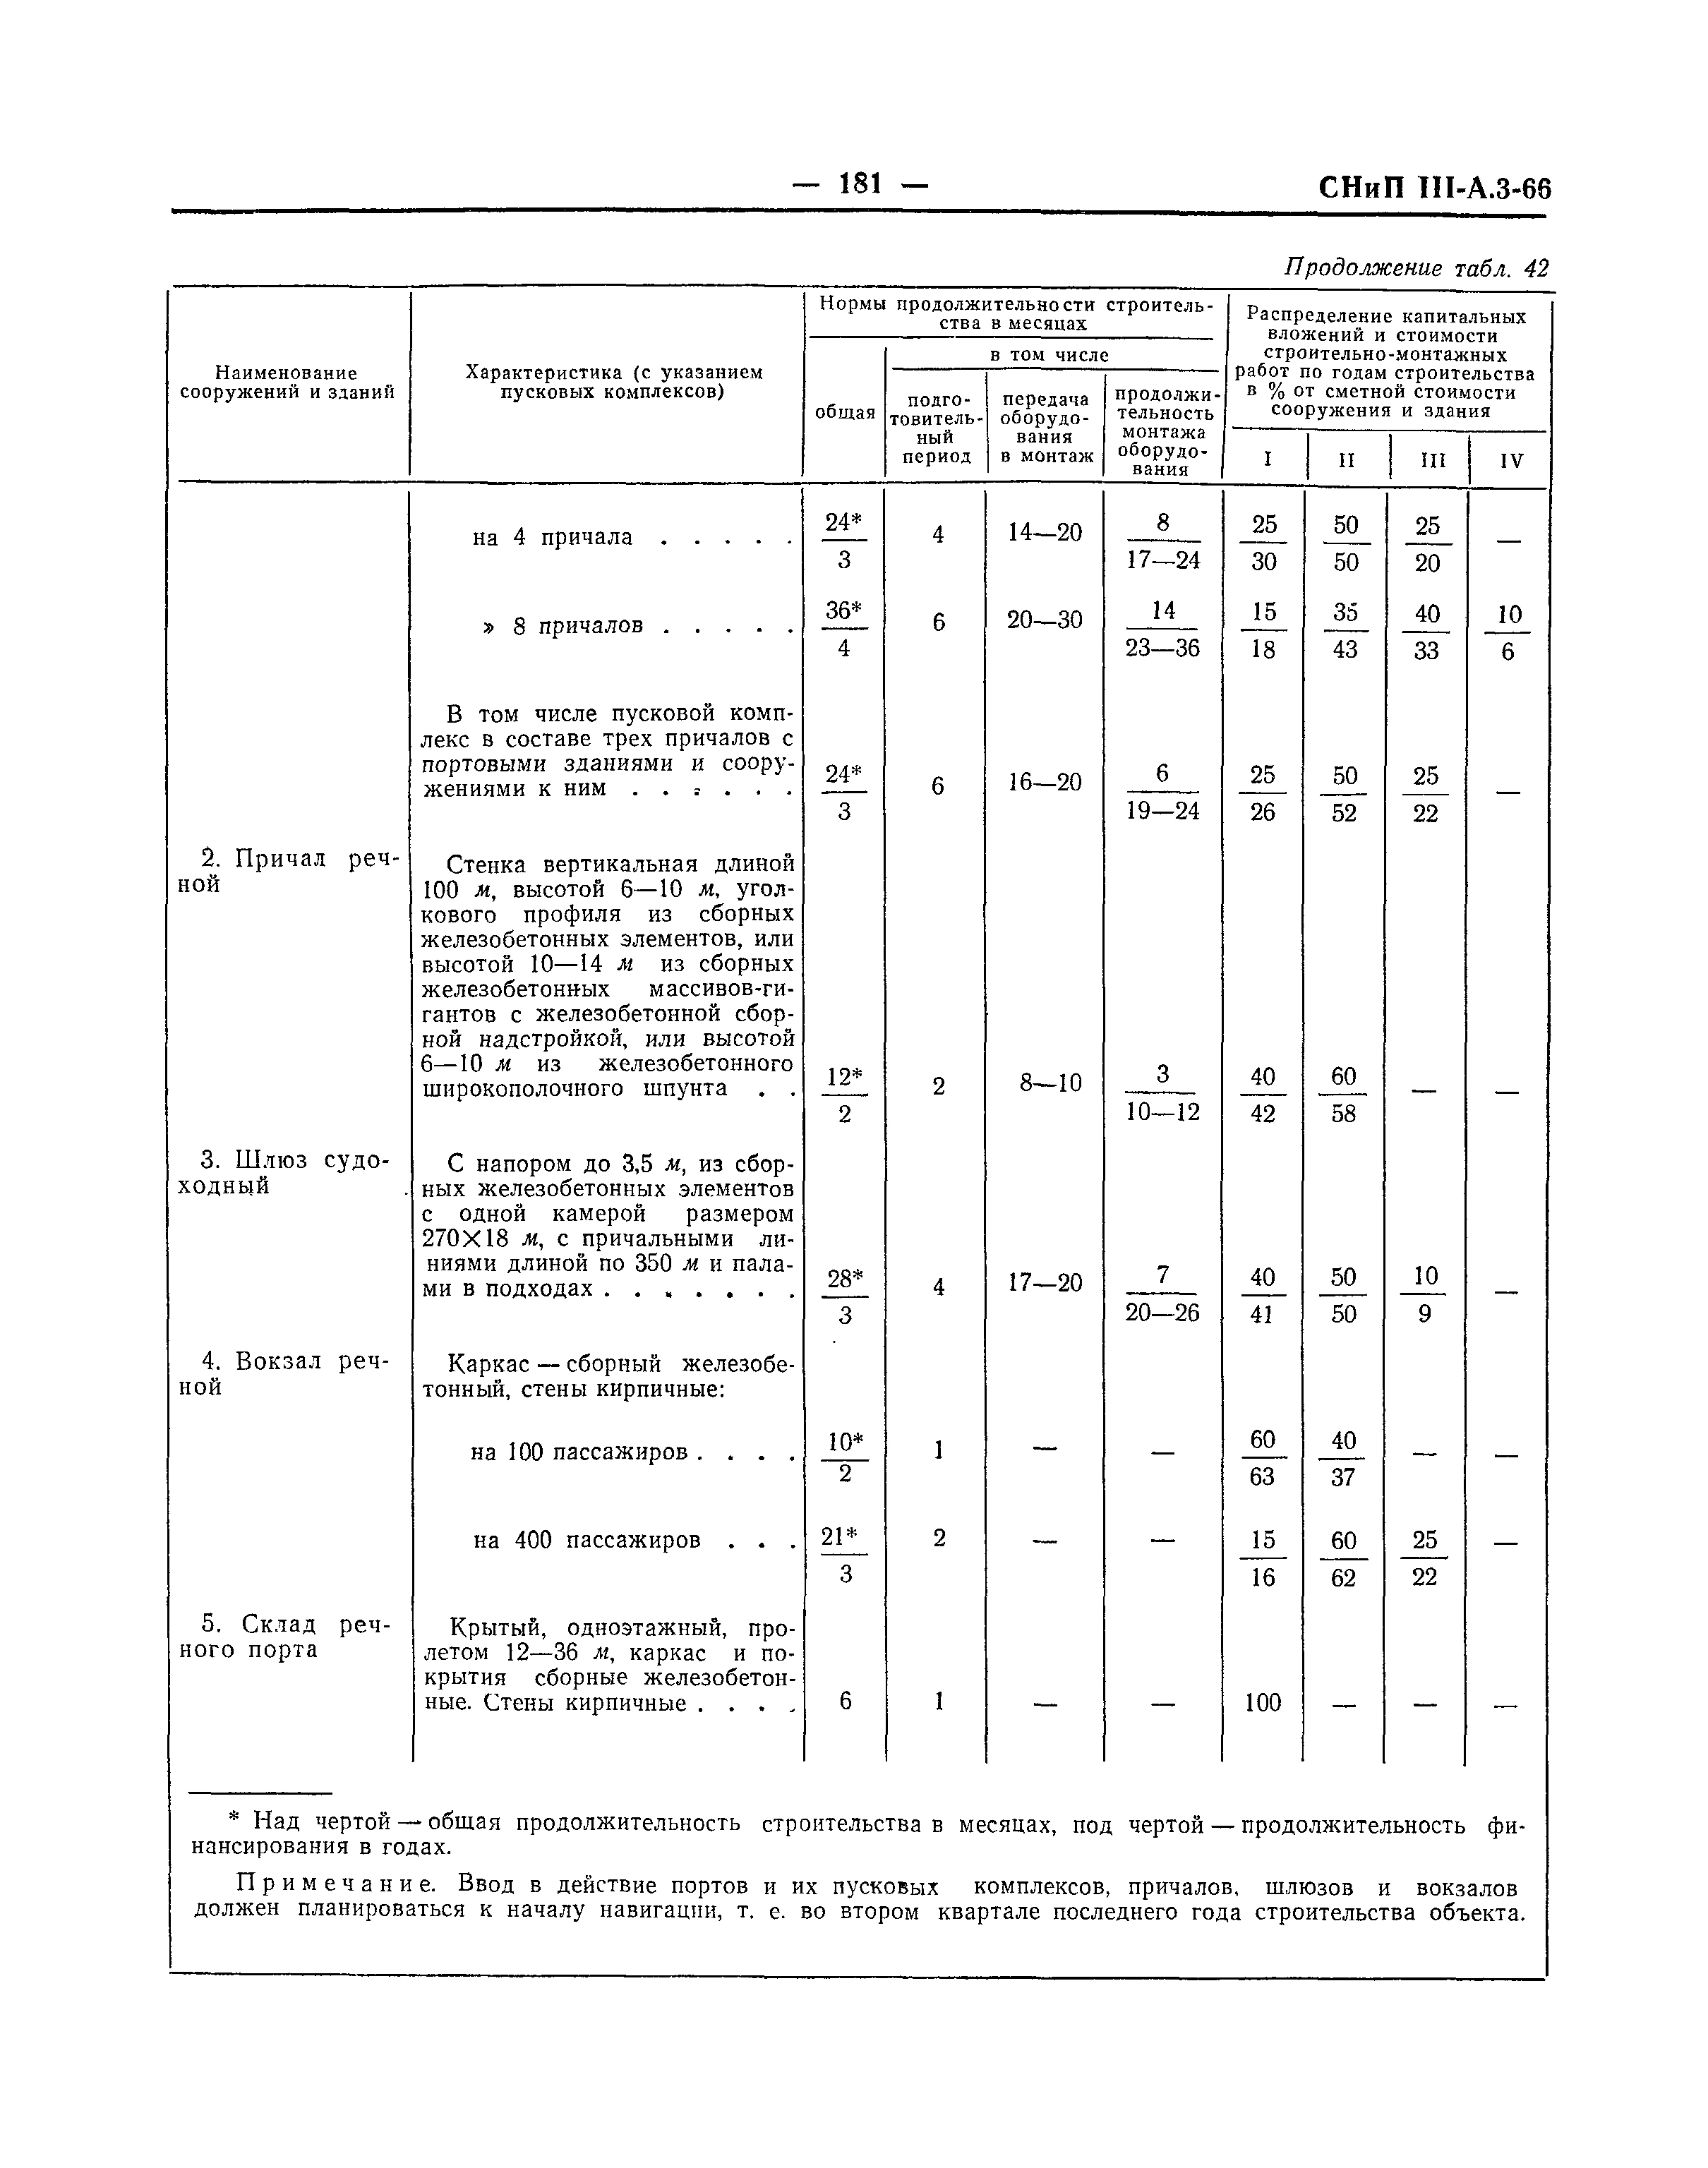 СНиП III-А.3-66